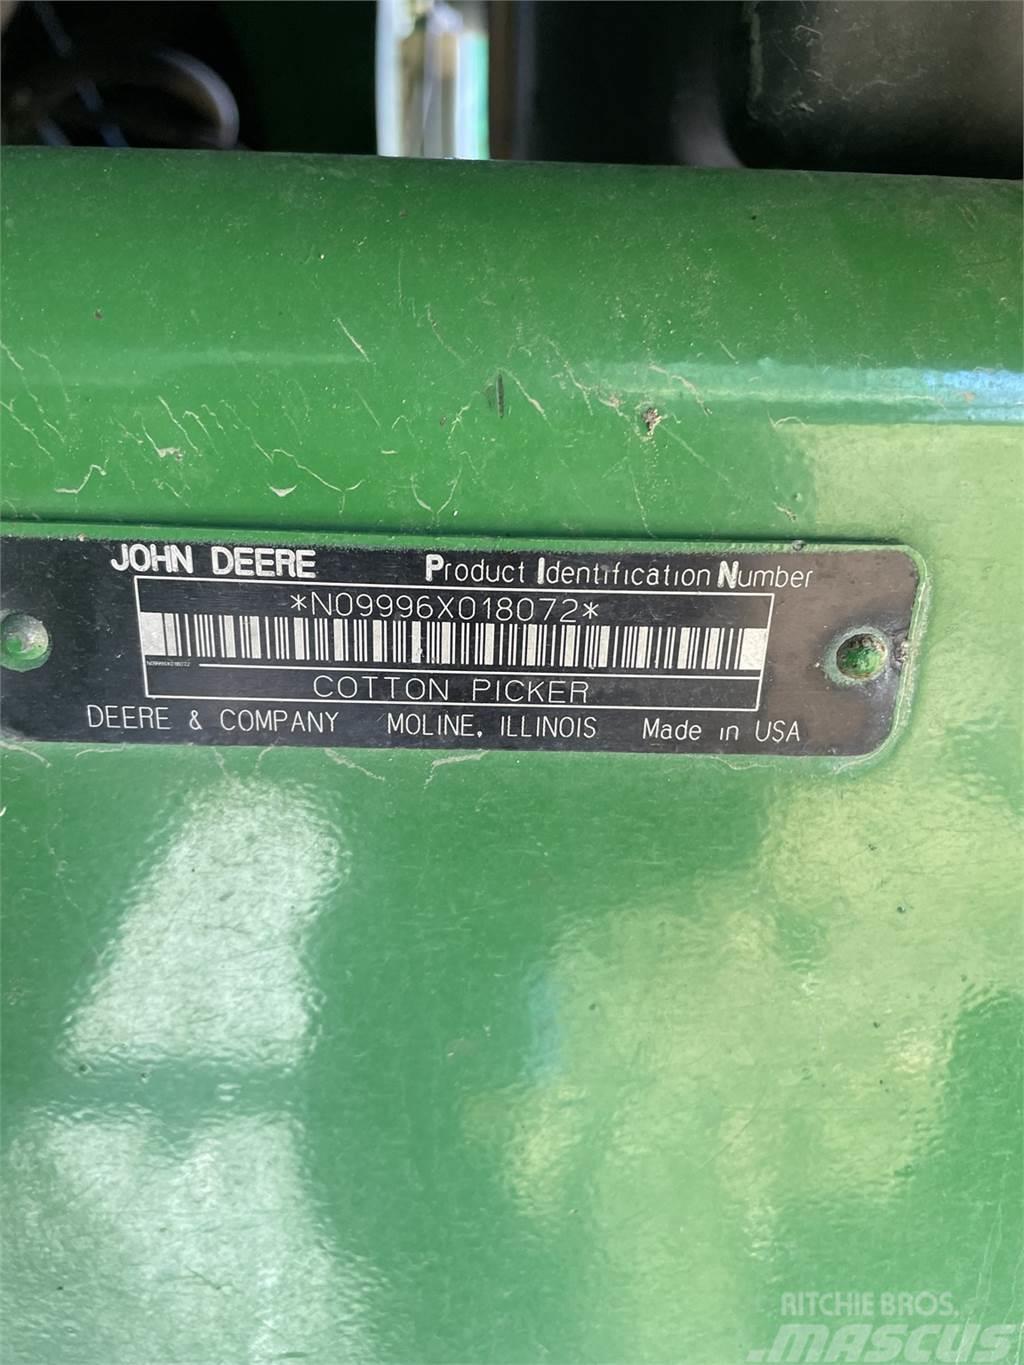 John Deere 9996 Otros equipos para cosecha